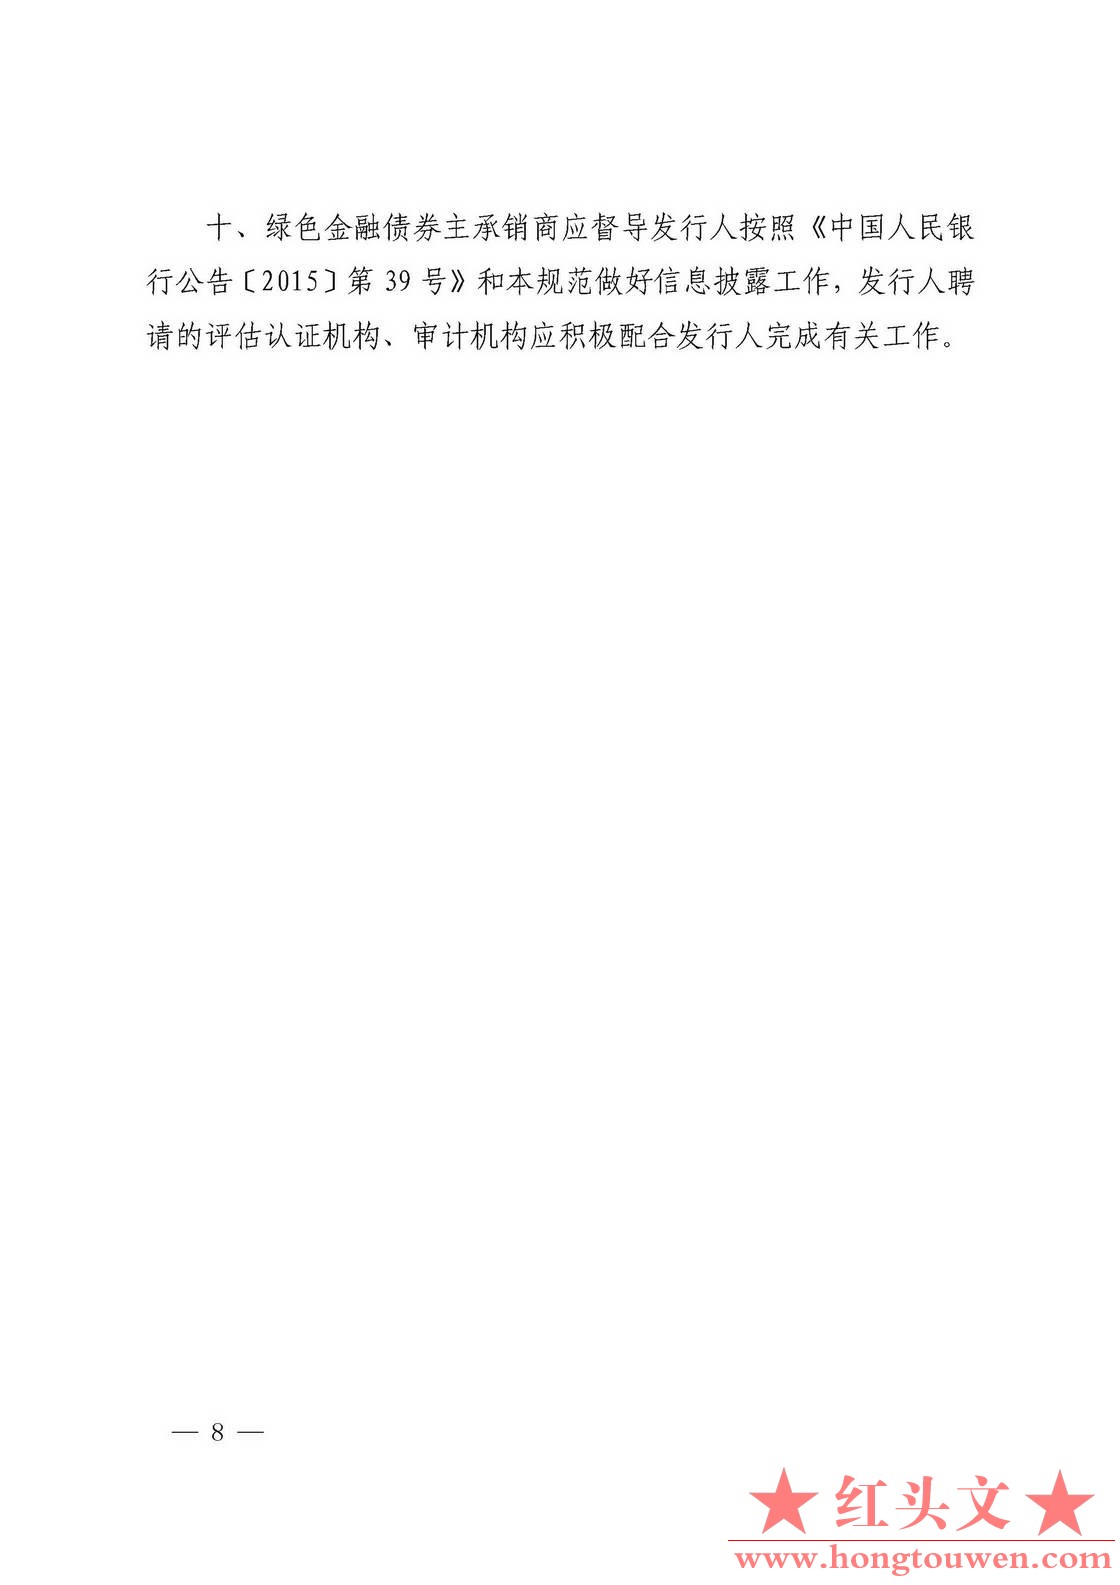 银发[2018]29号-中国人民银行关于加强绿色金融在全存续监督管理有关事宜的通知_页面_0.jpg